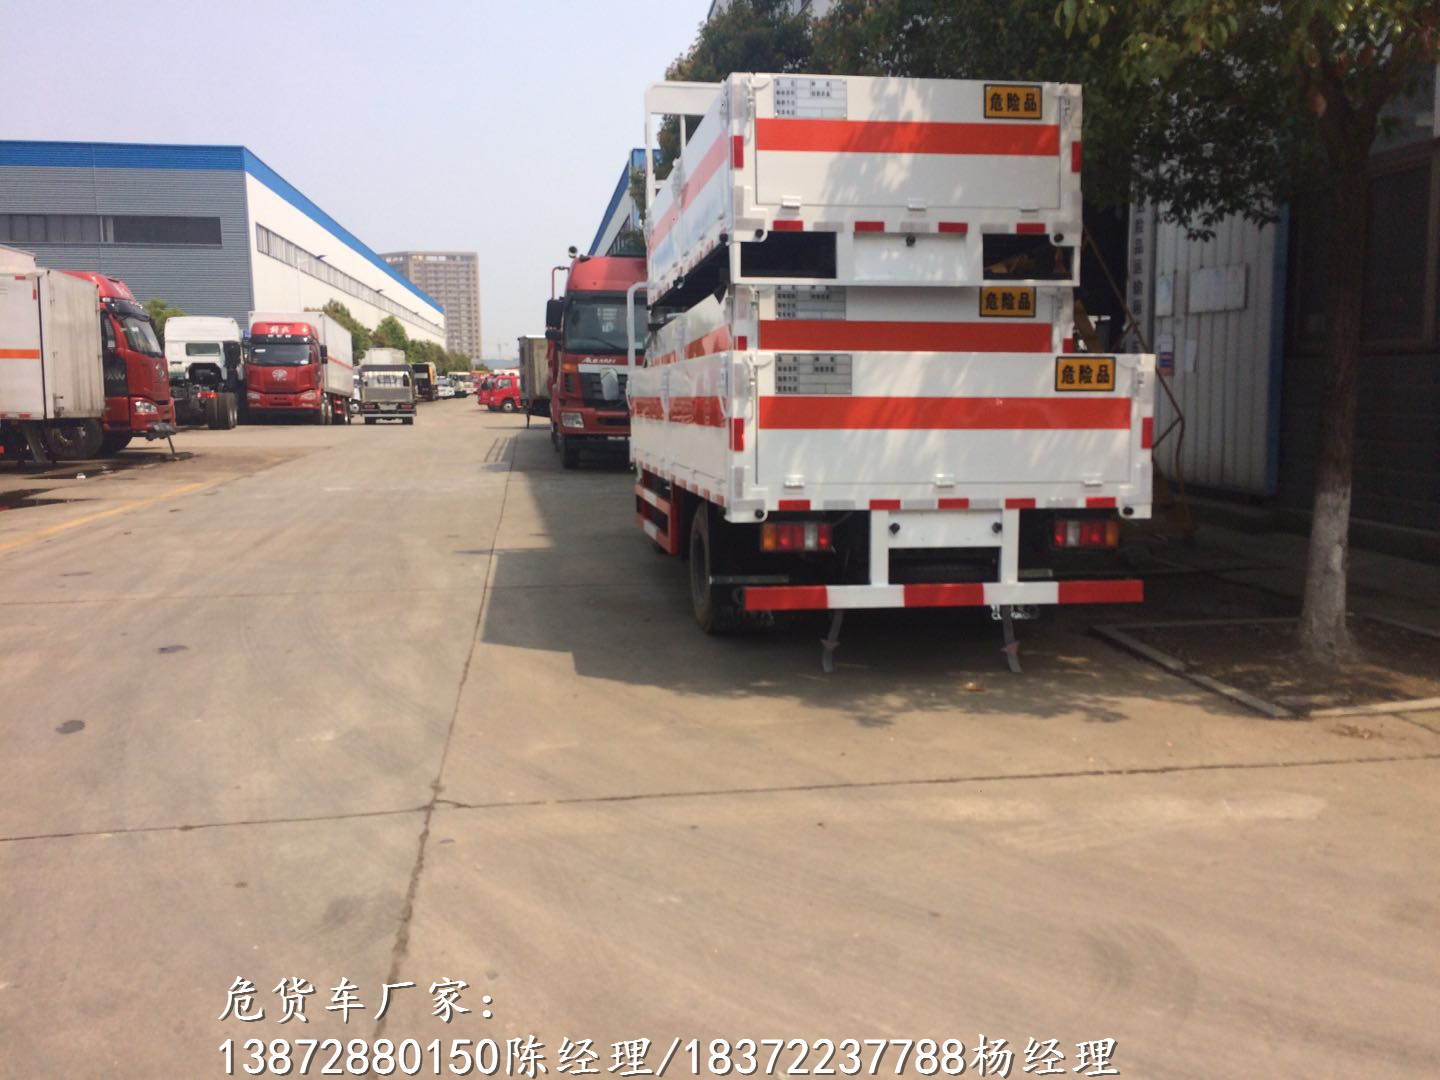 萍乡国六解放带尾板气瓶车生产厂家危险品车